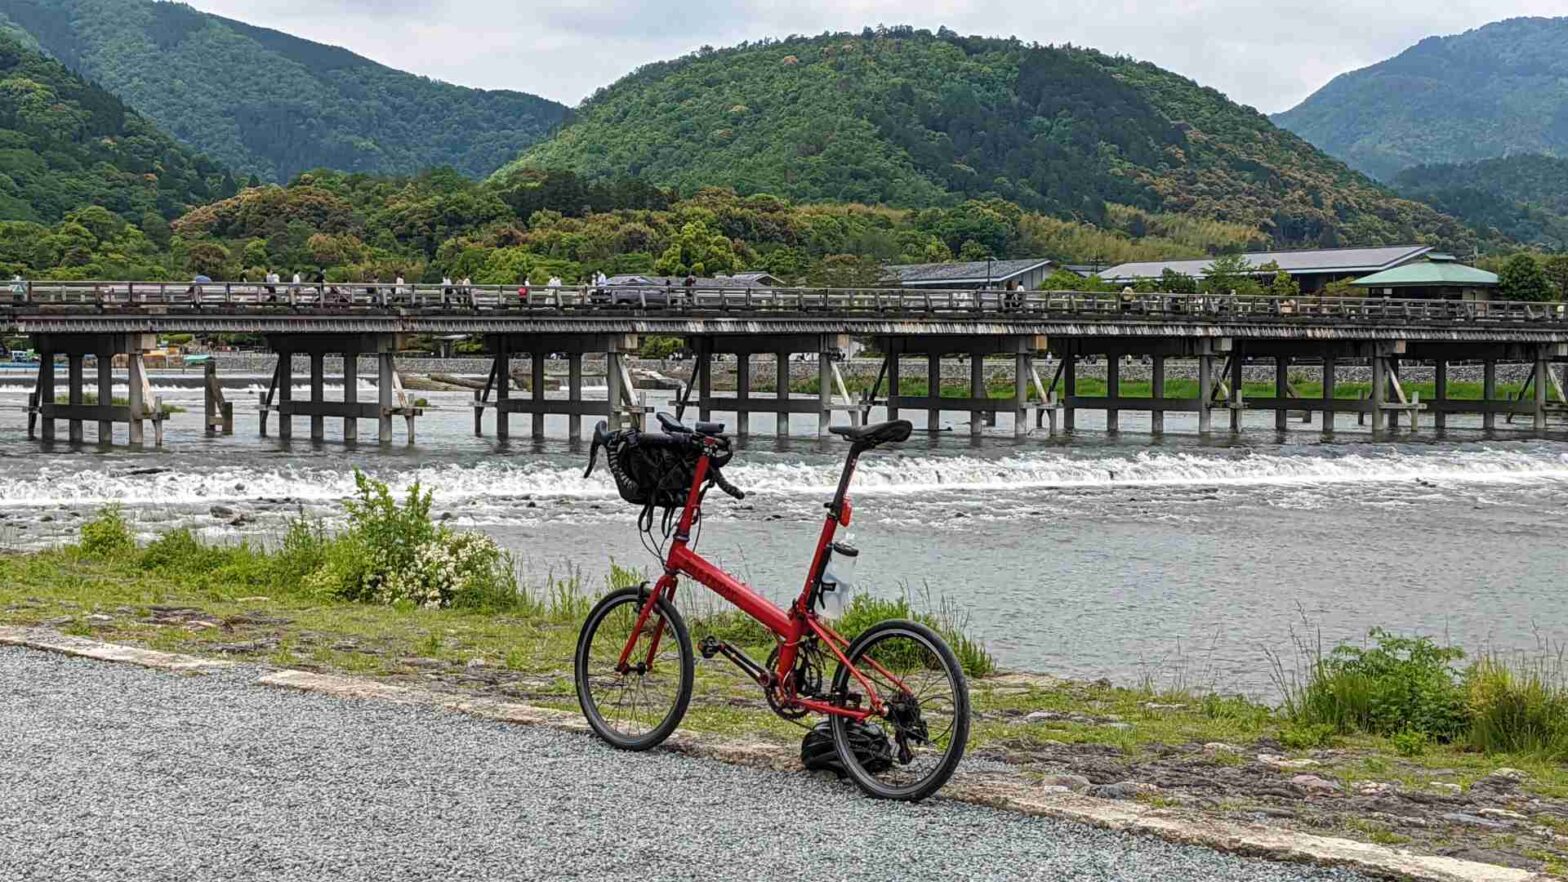 桂川の渡月橋の手前に自転車を停めて撮影した画像